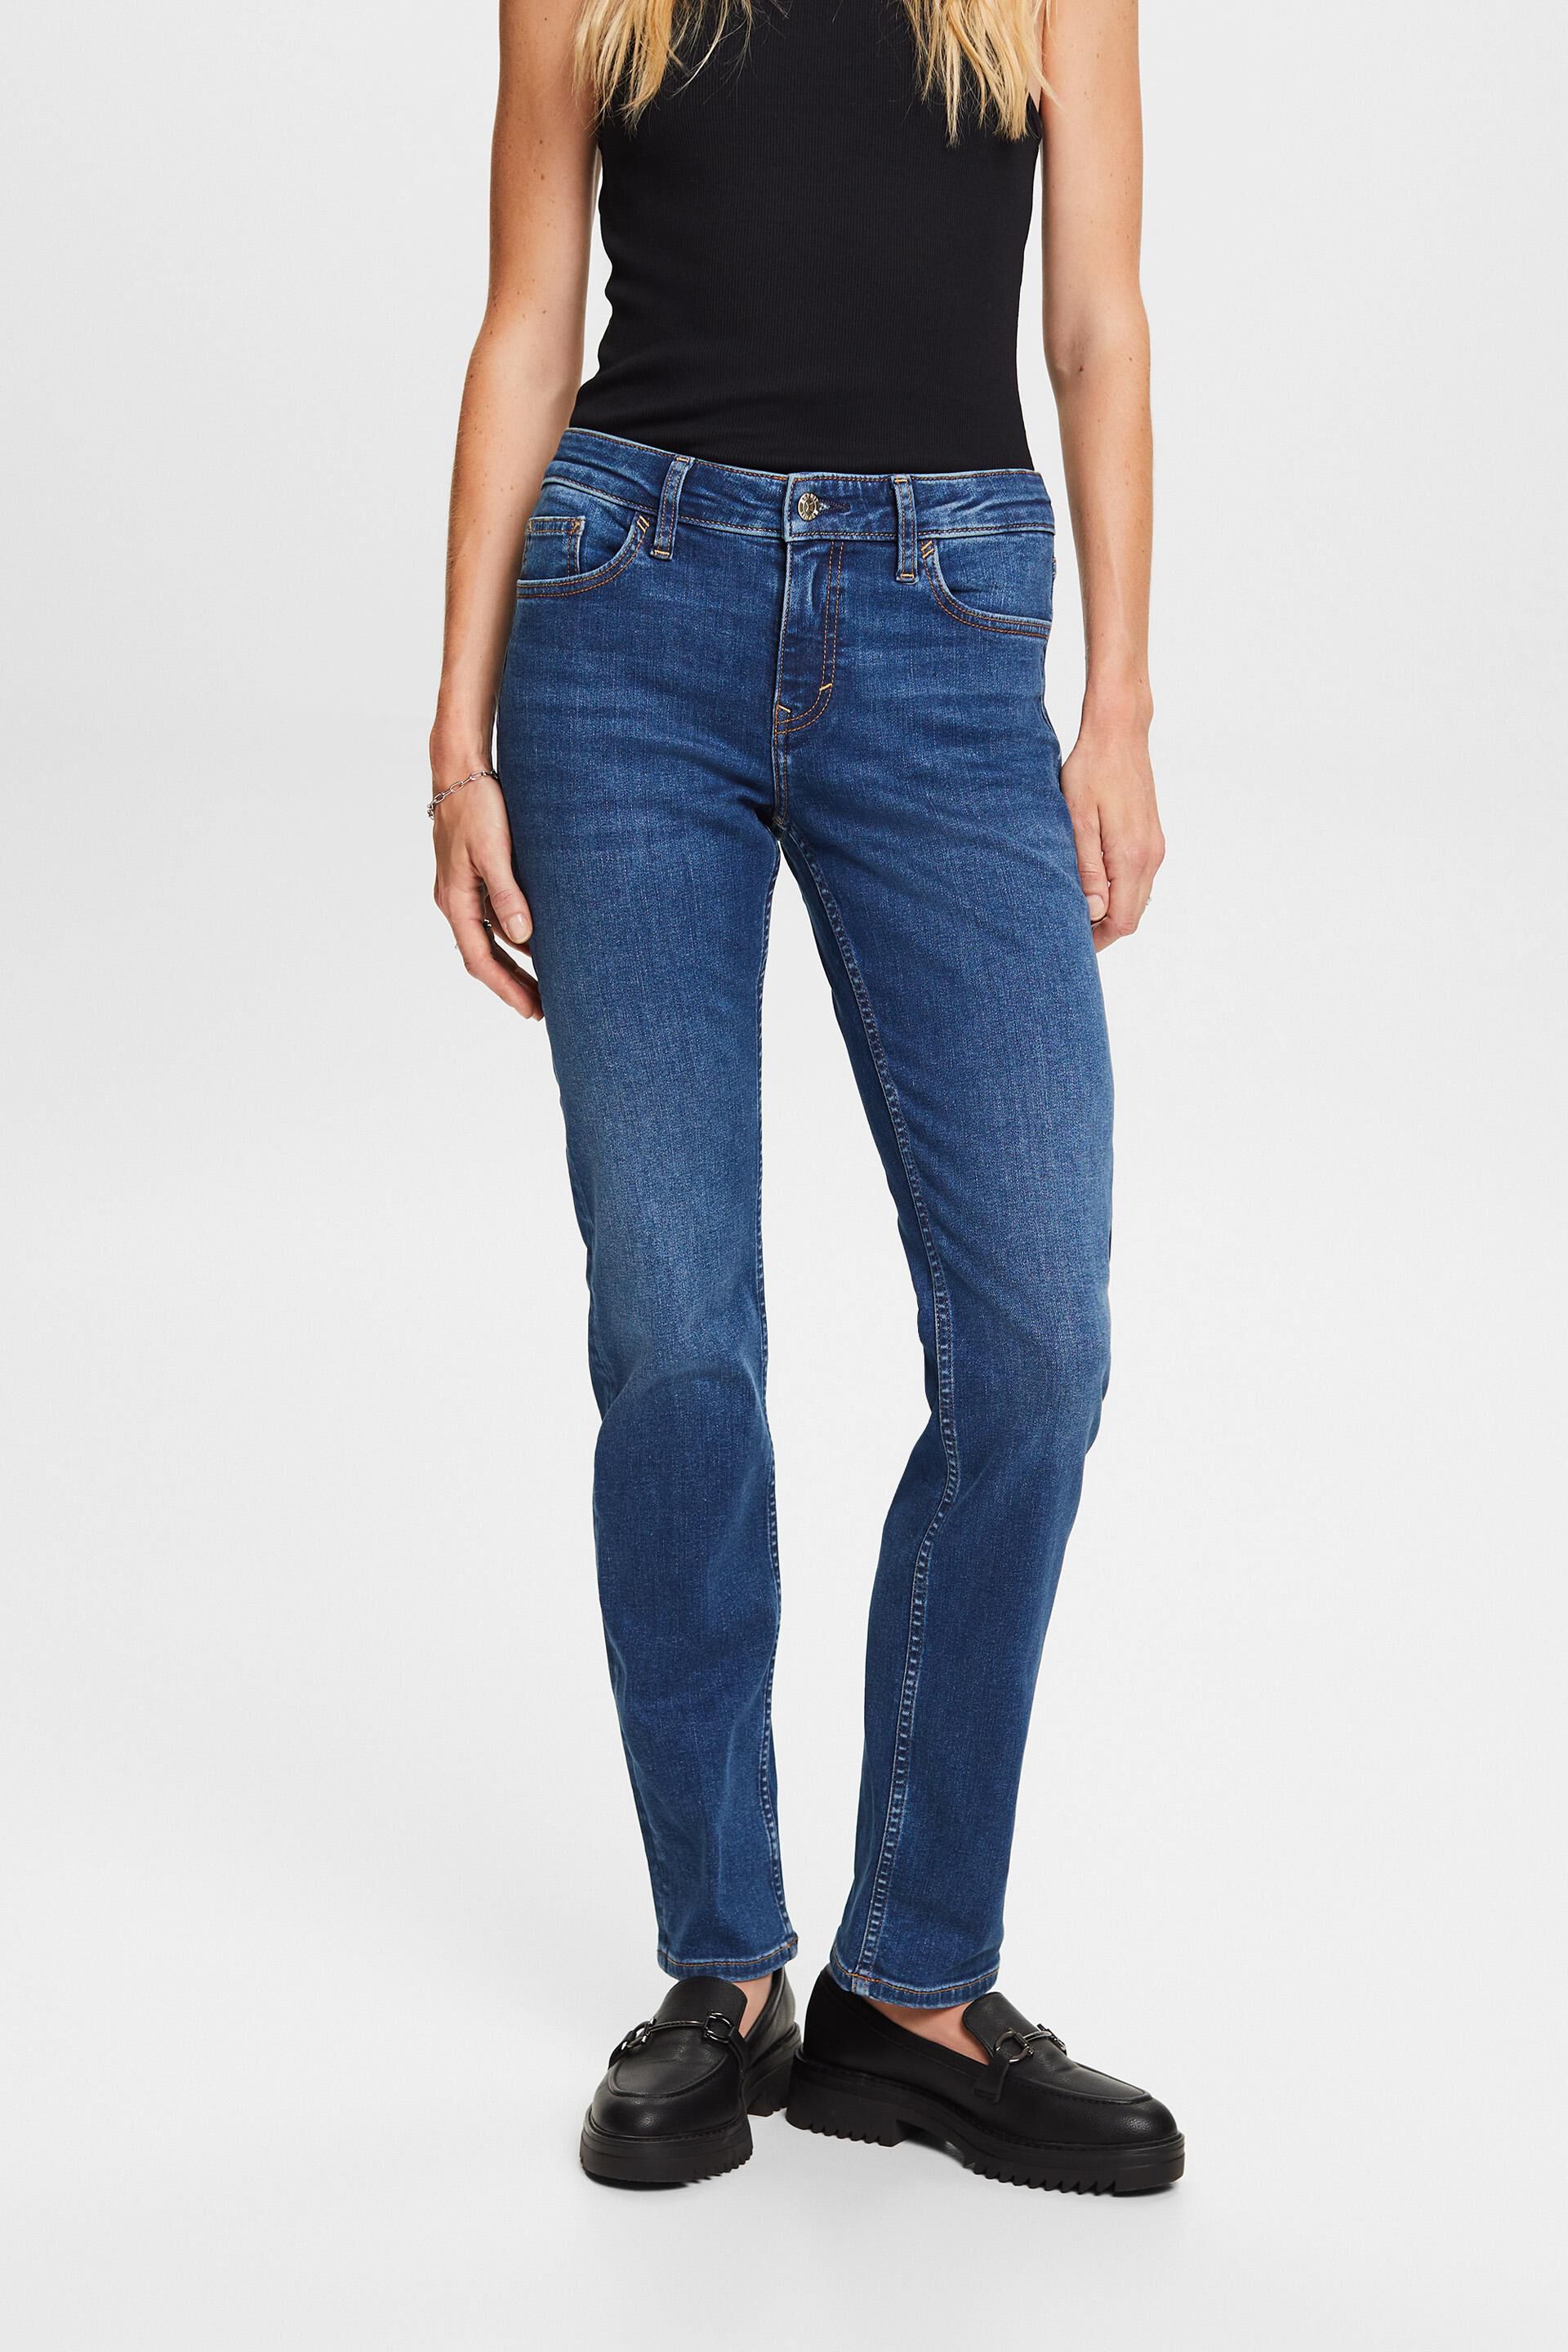 Esprit cotton stretch blend jeans, leg Straight